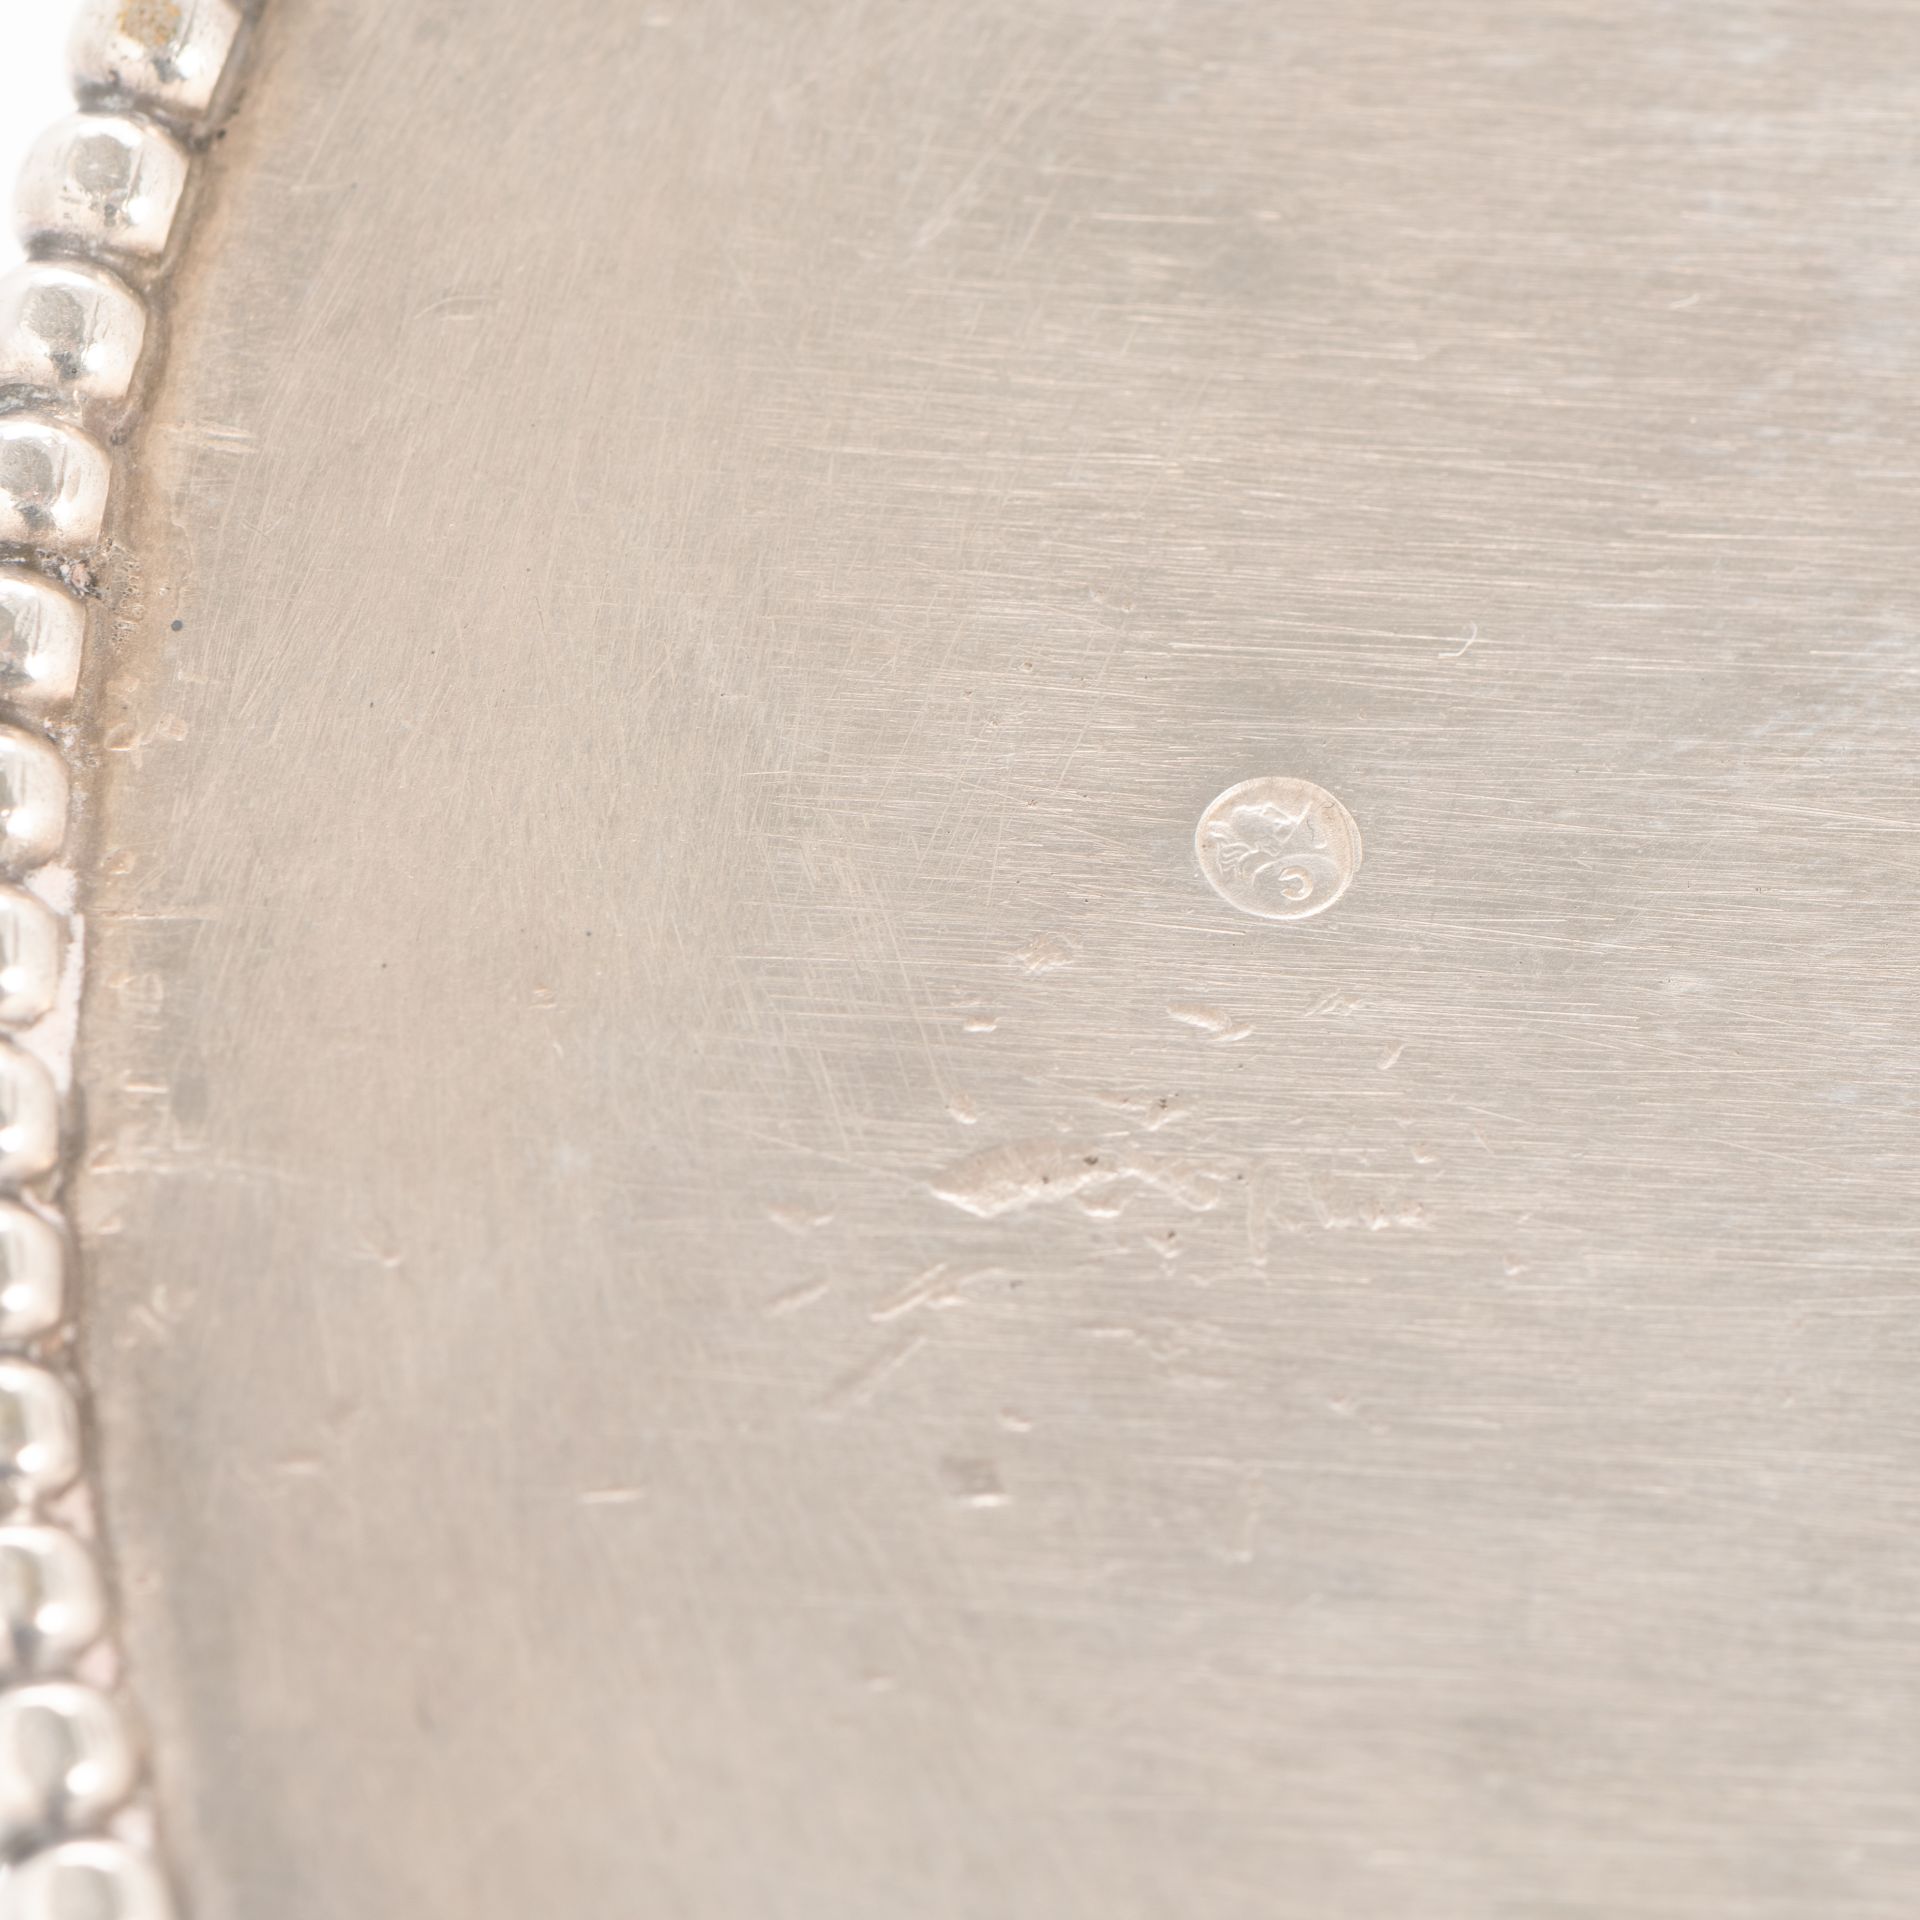 Silberkorb mit Perlfriesrand - Bild 4 aus 4